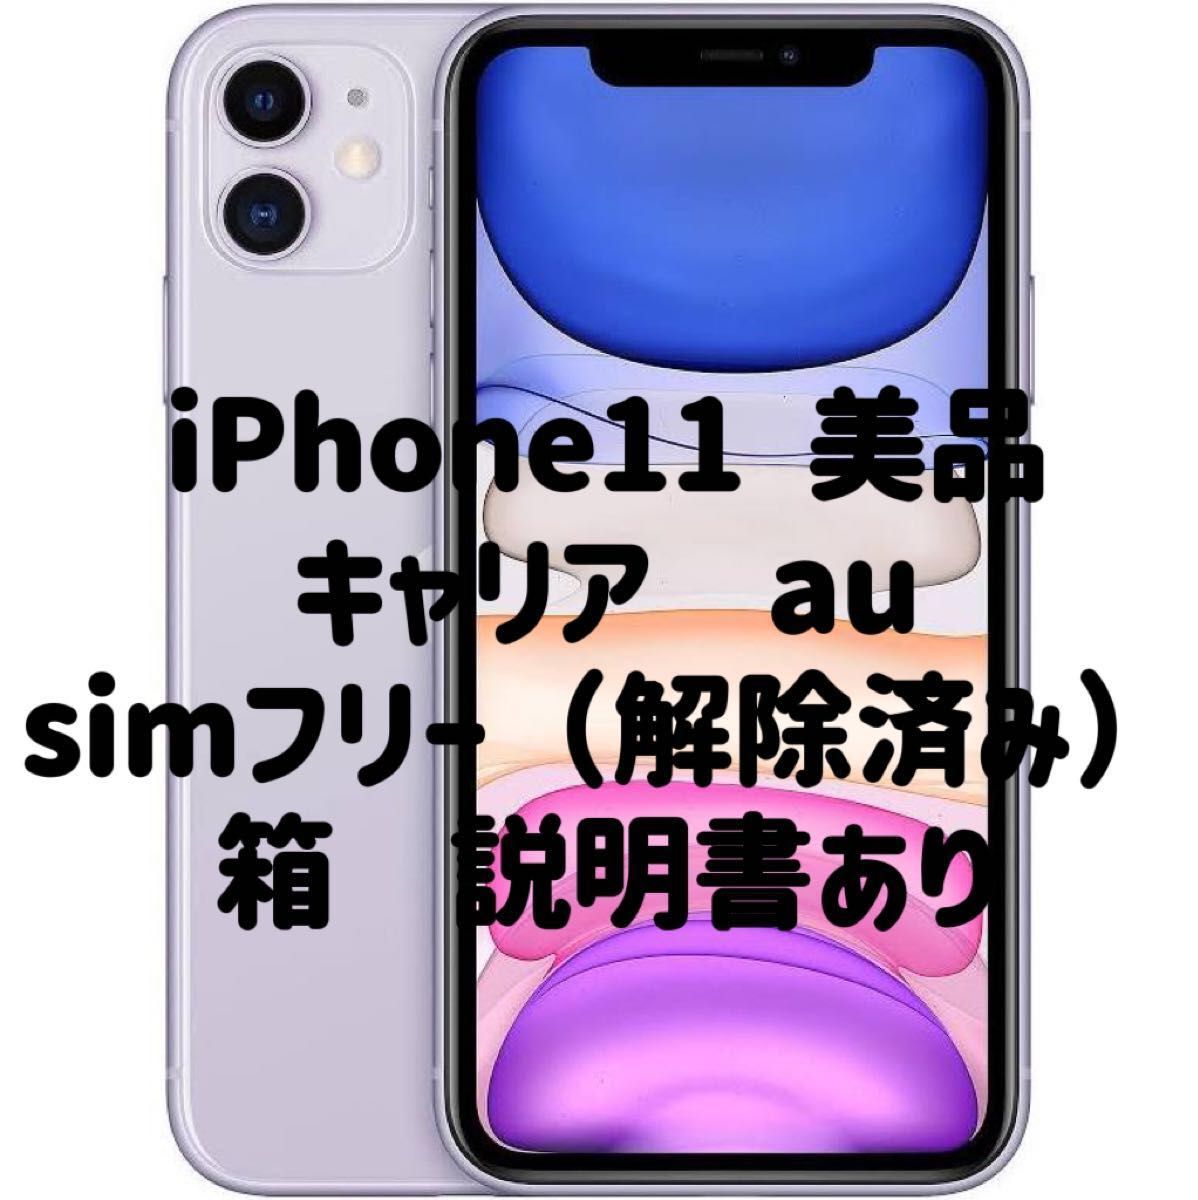 翌日発送可能】 iPhone11 64GB パープル SIMフリー 箱あり | artfive.co.jp